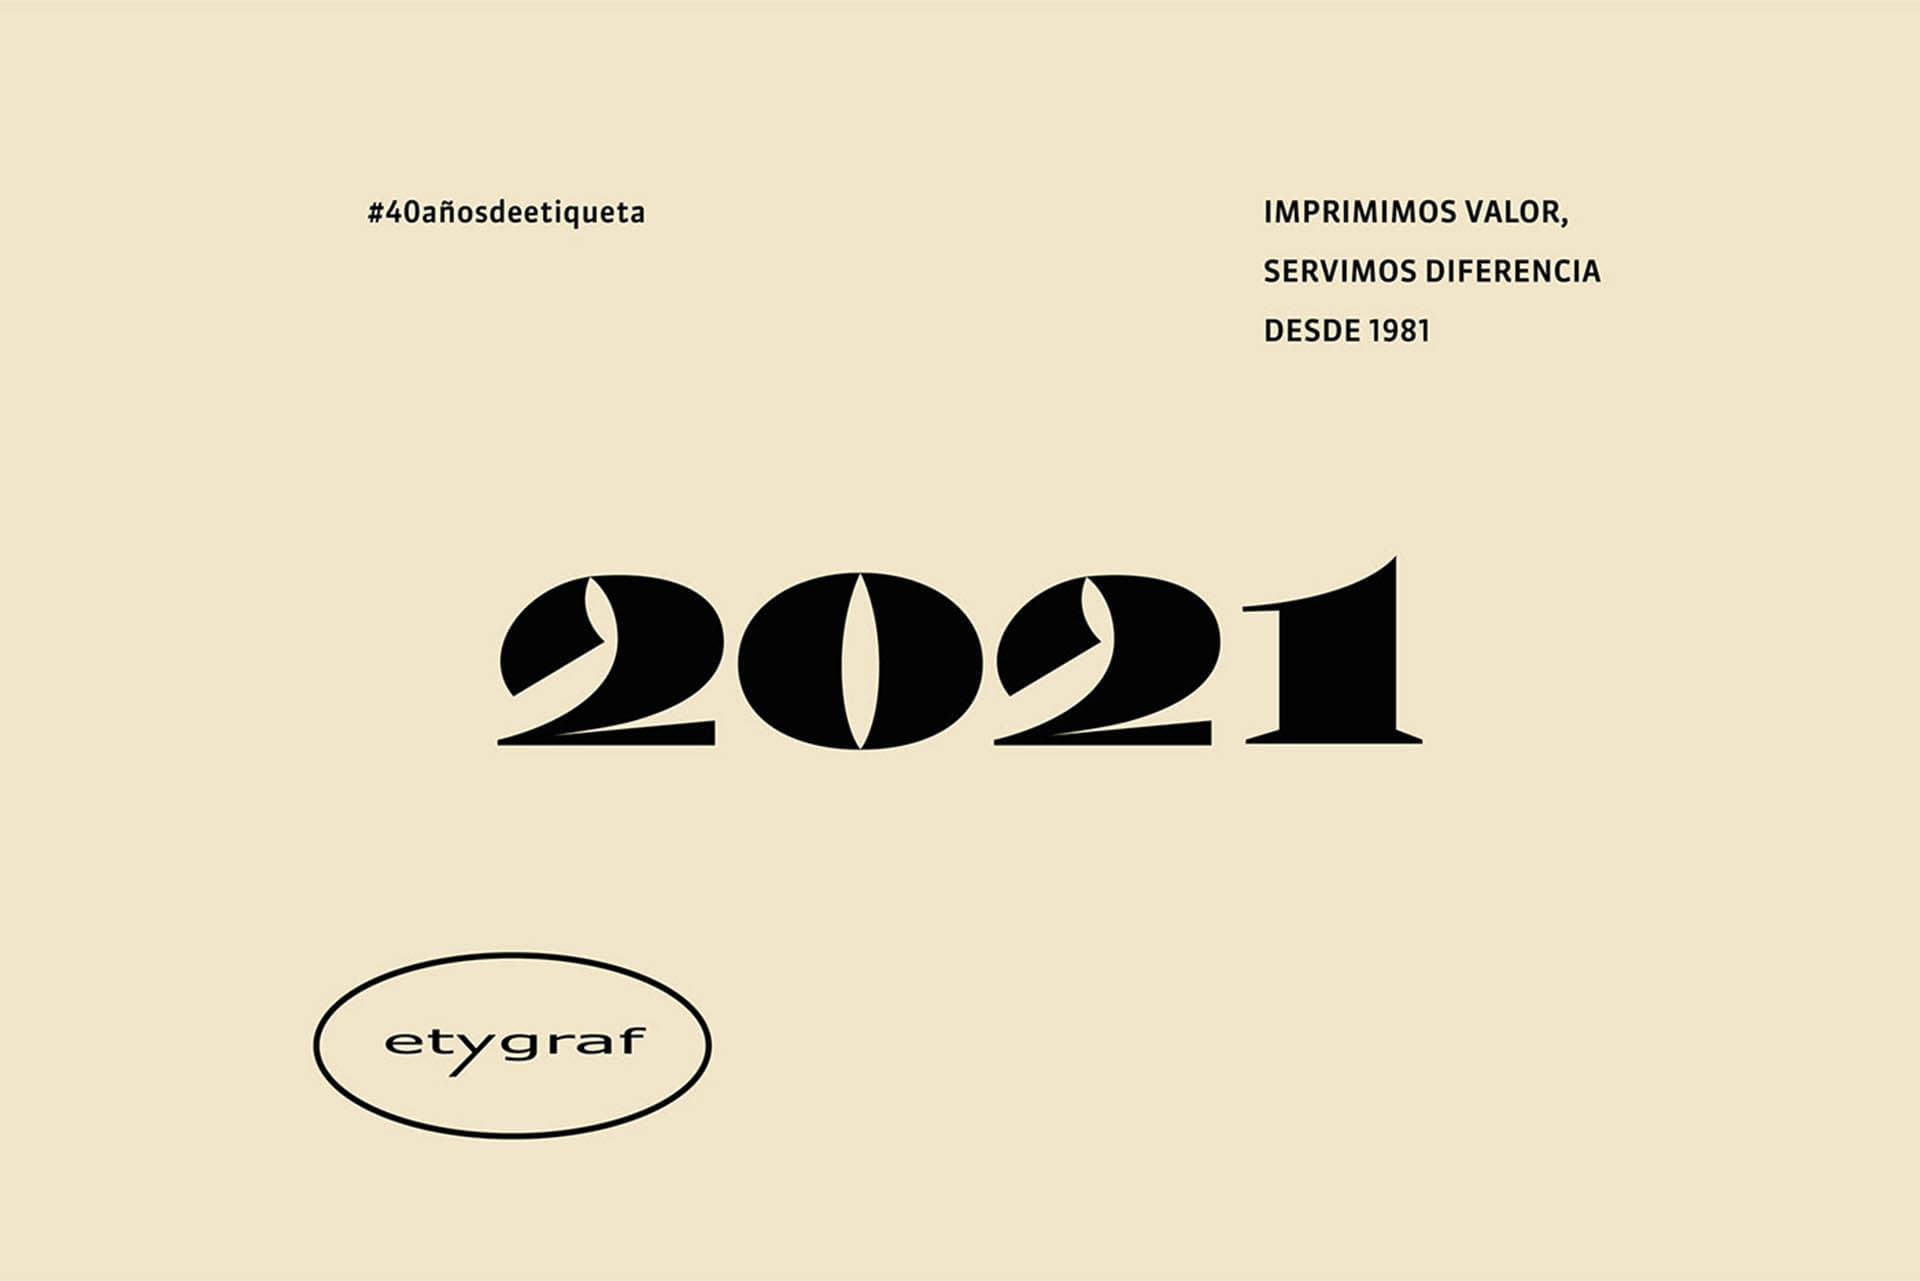 Ilustraciones y diseño de branding y packaging para campaña del 40 aniversario de Etygraf etiquetas gráficas